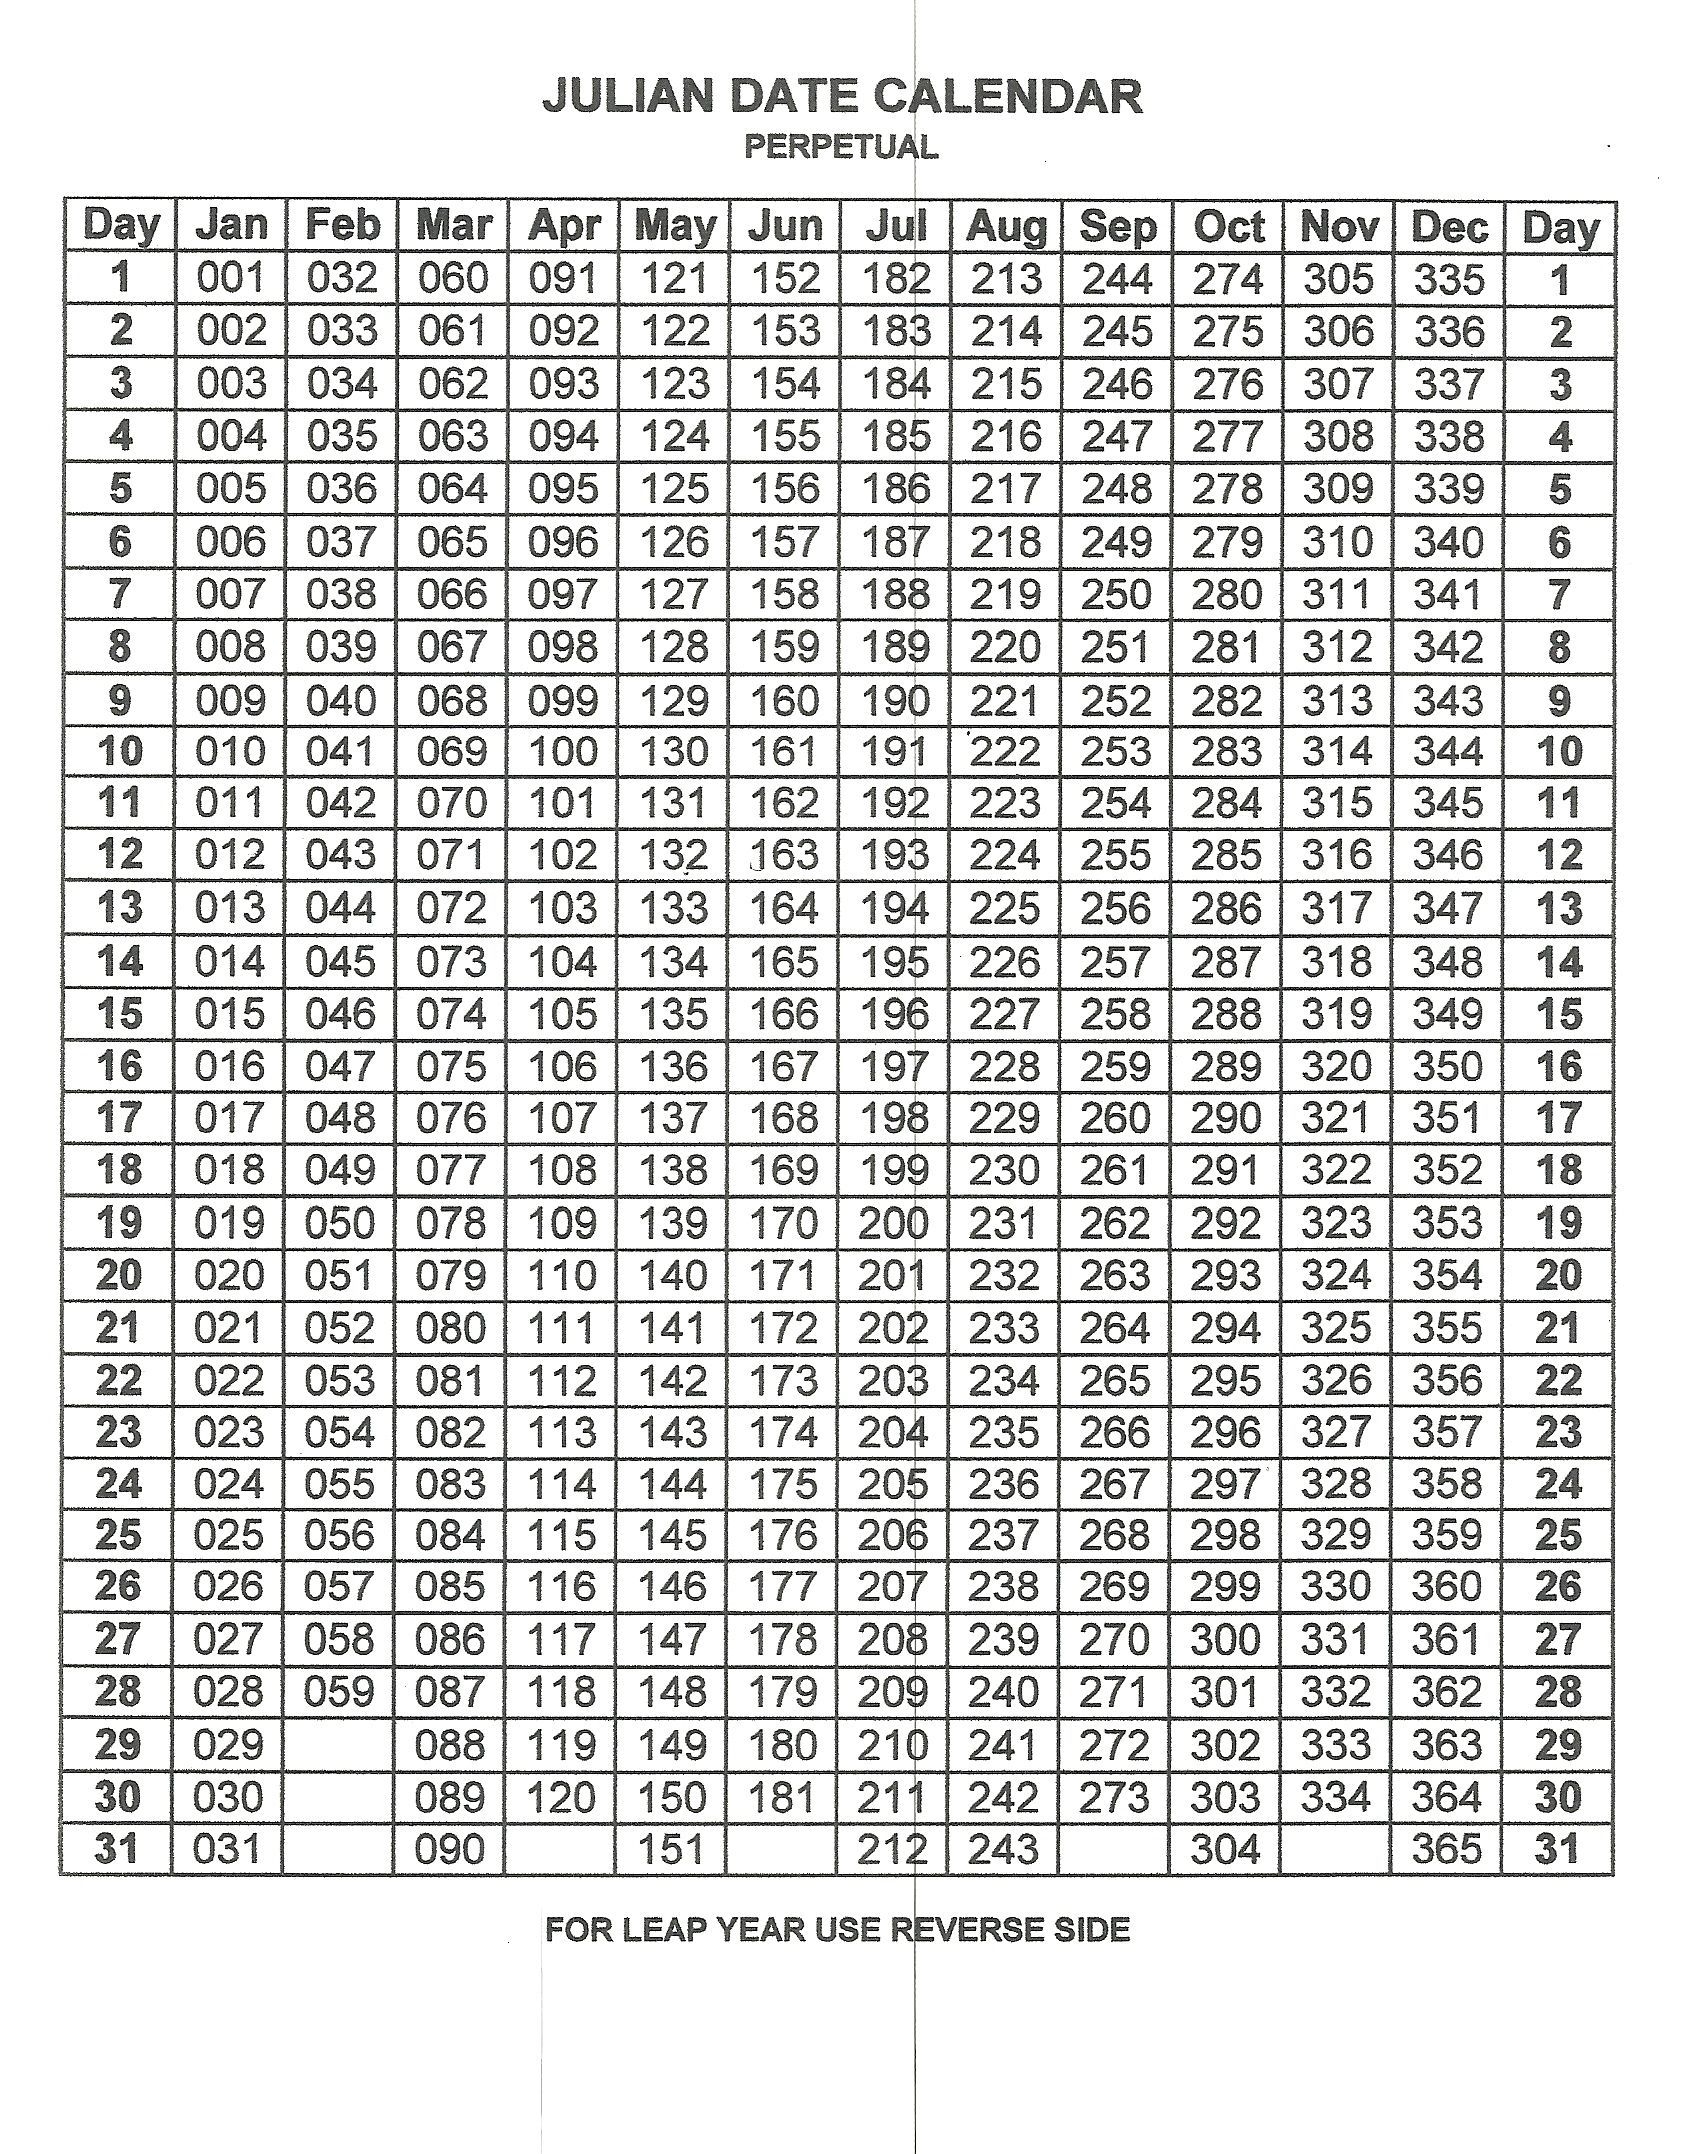 Perpetual Julian Date Calendar | Calendar Printables